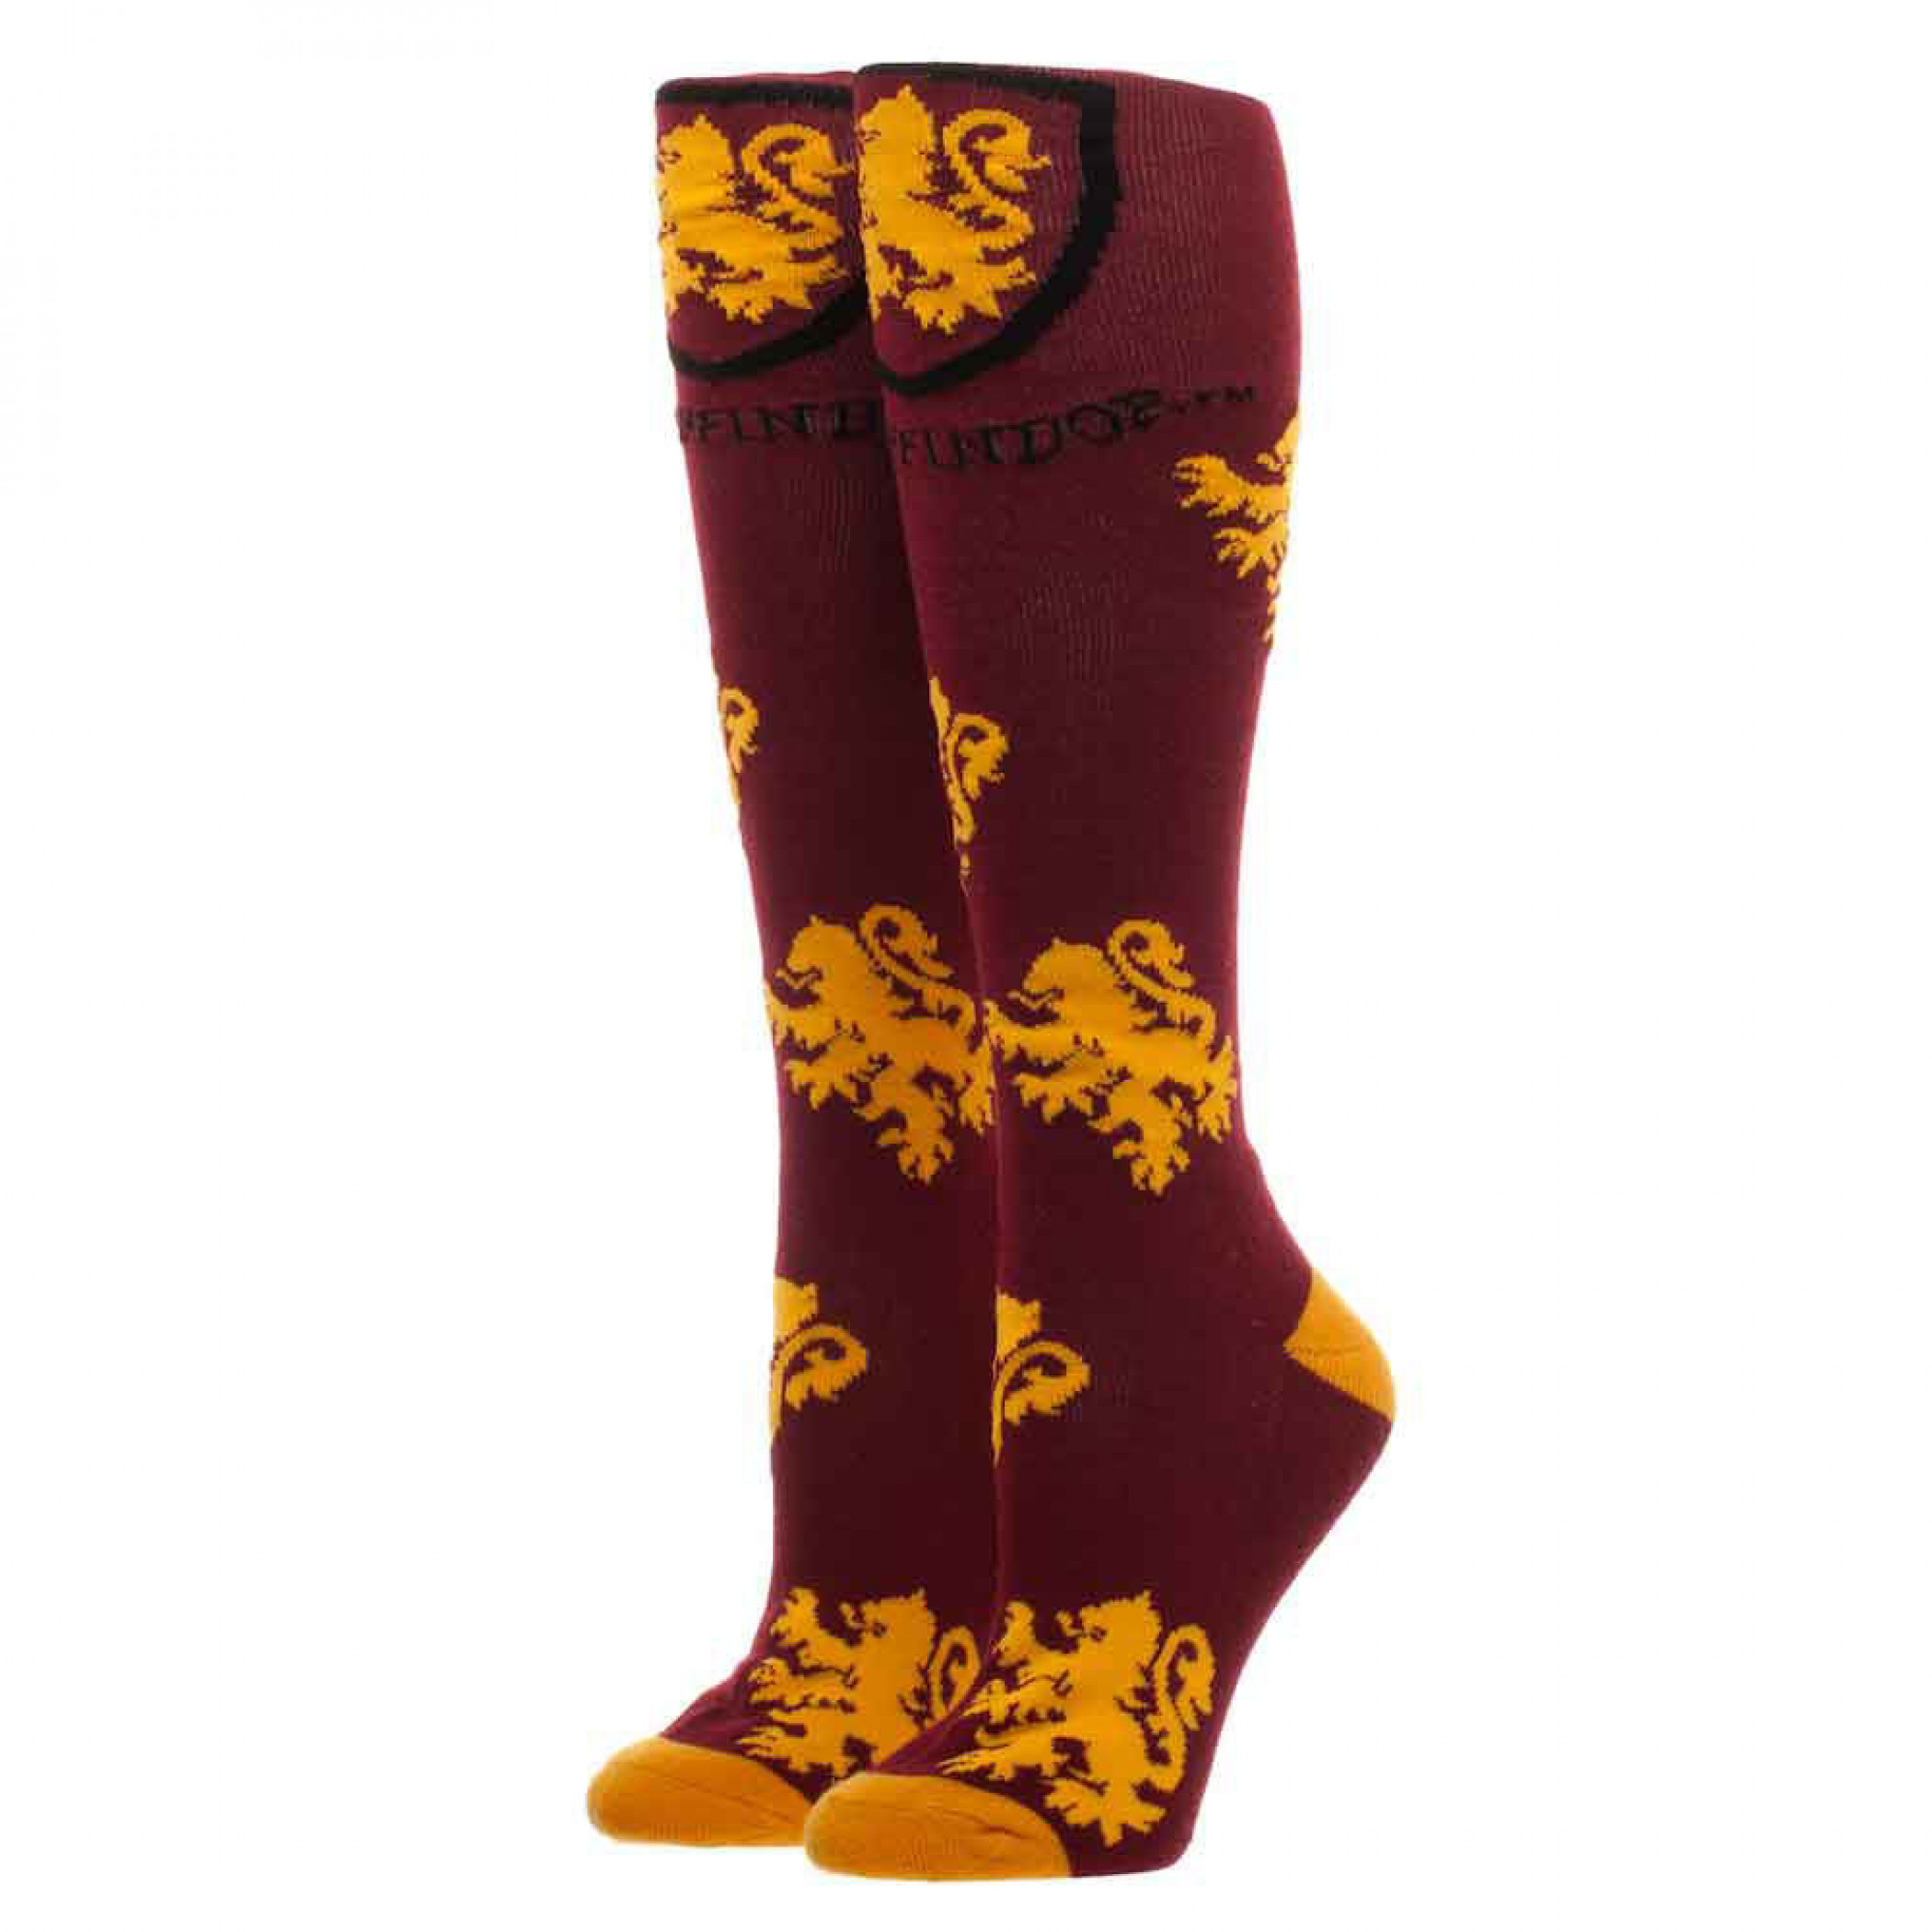 Harry Potter Gryffindor Knee High Socks